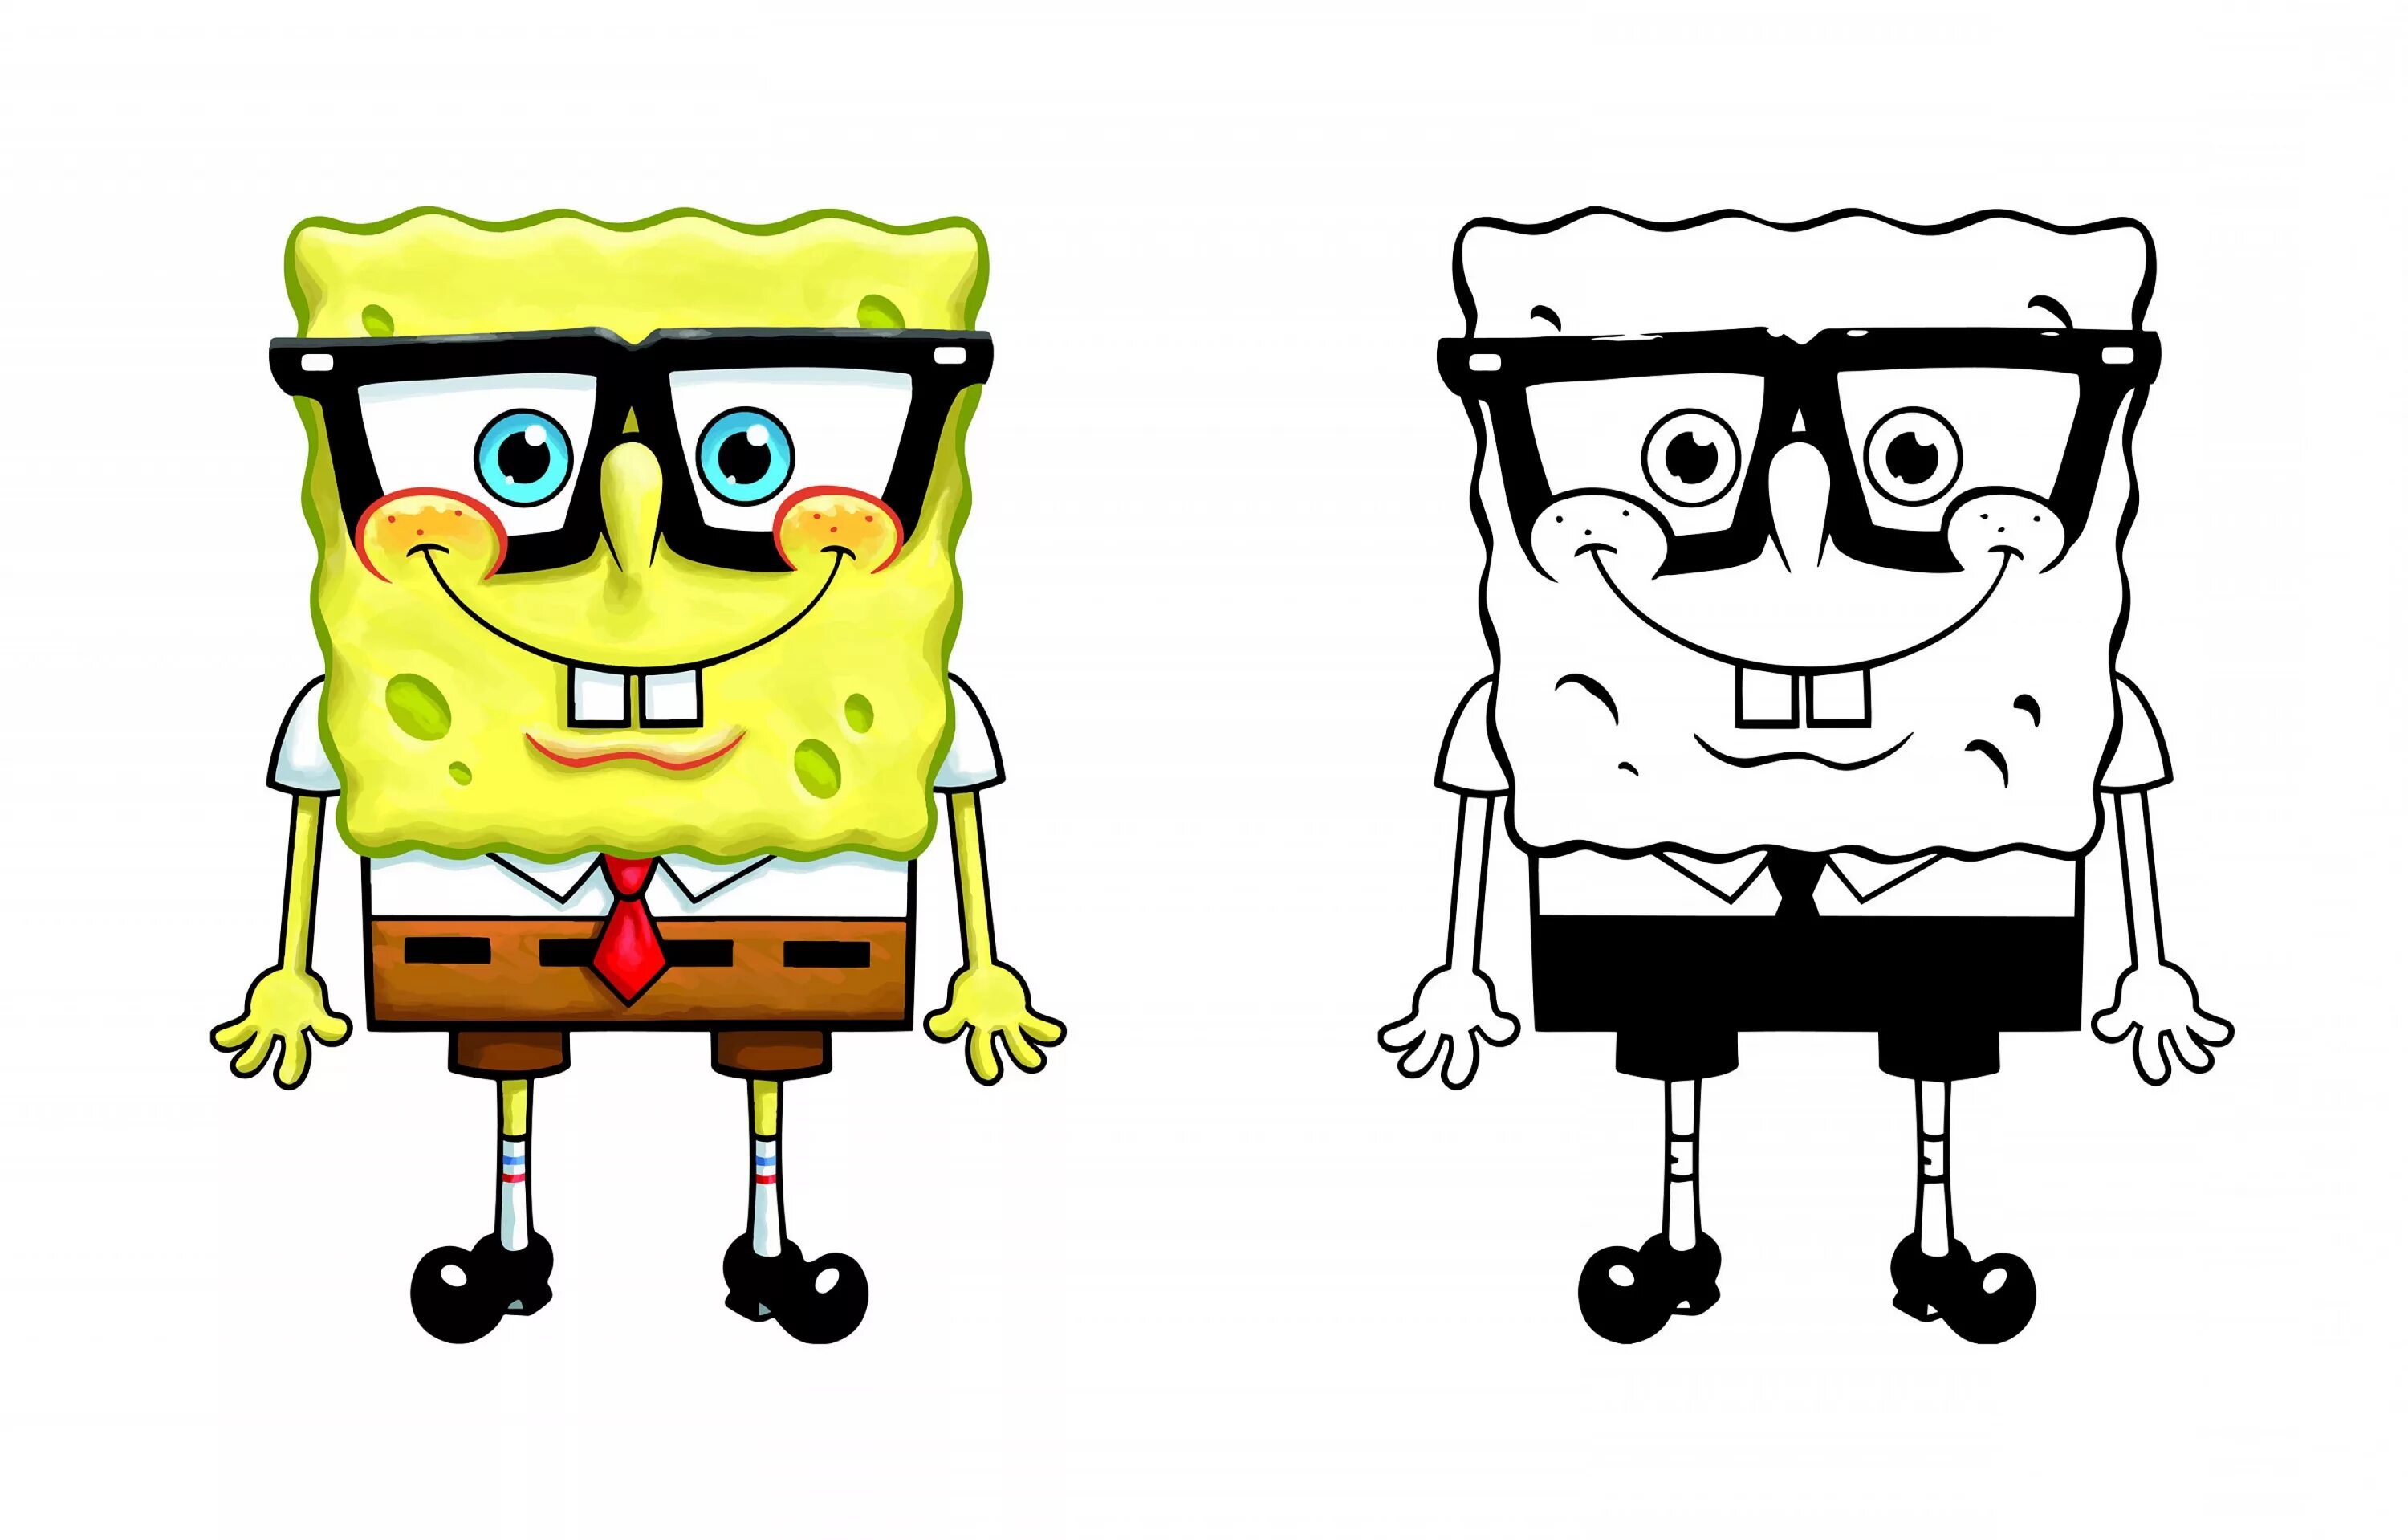 Spongebob pack. Губка Боб квадратные штаны (персонаж). Спанч Боб вектор. Spongebob раскраска. Губка Боб логотип.